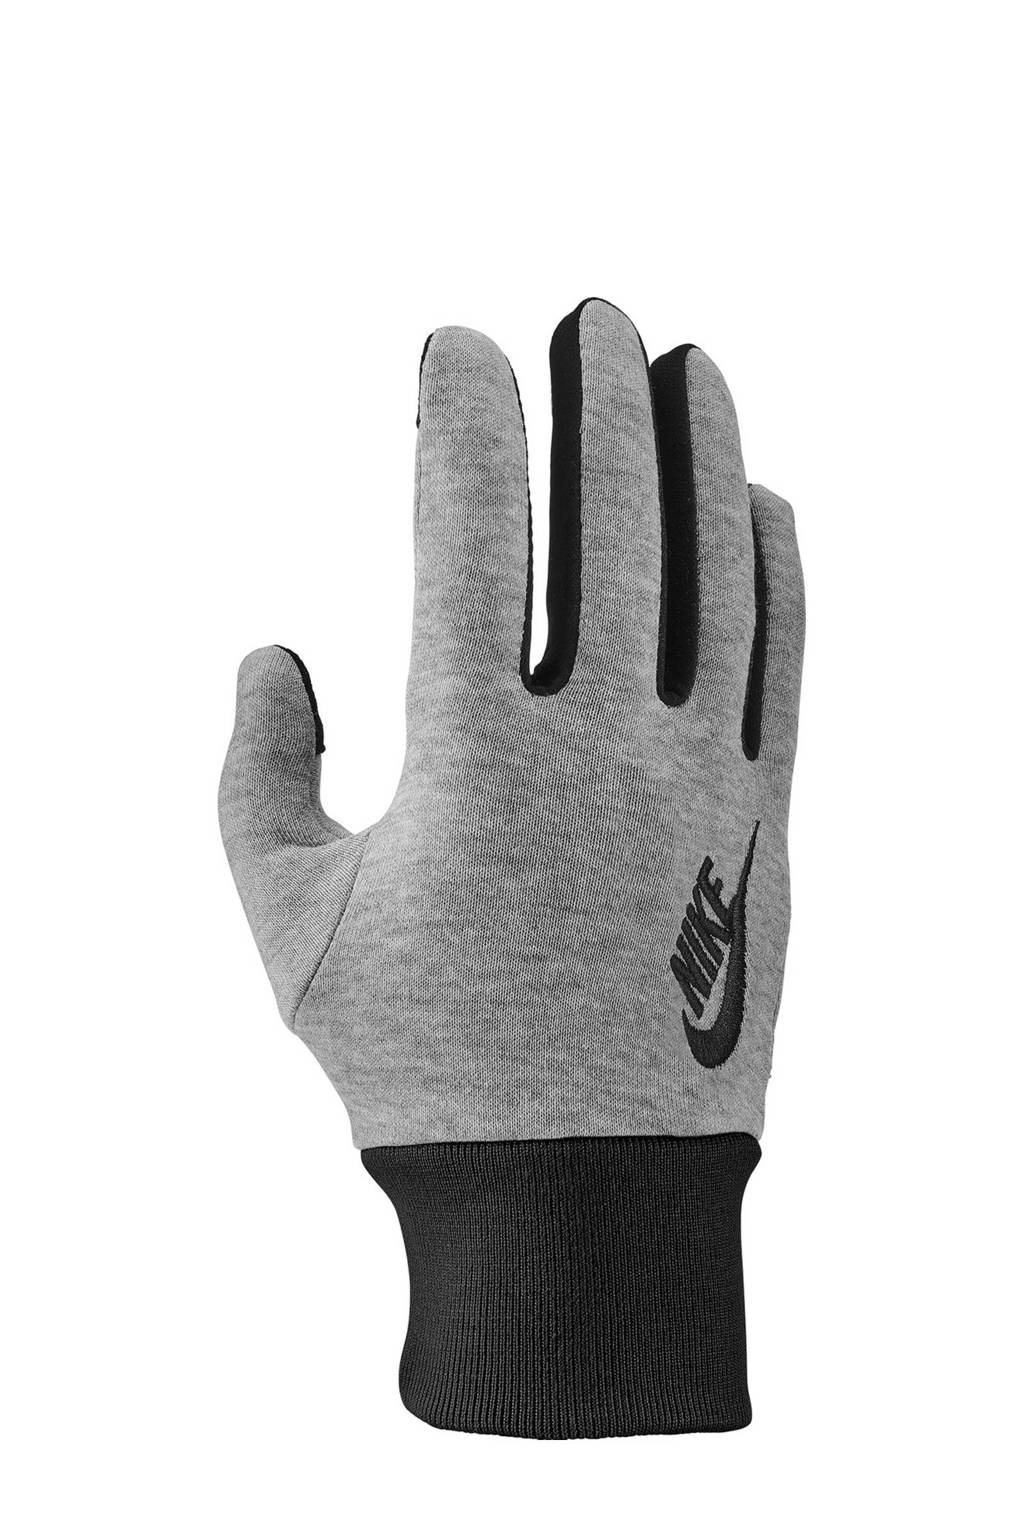 ontbijt forum voelen Nike handschoenen grijs/zwart | wehkamp